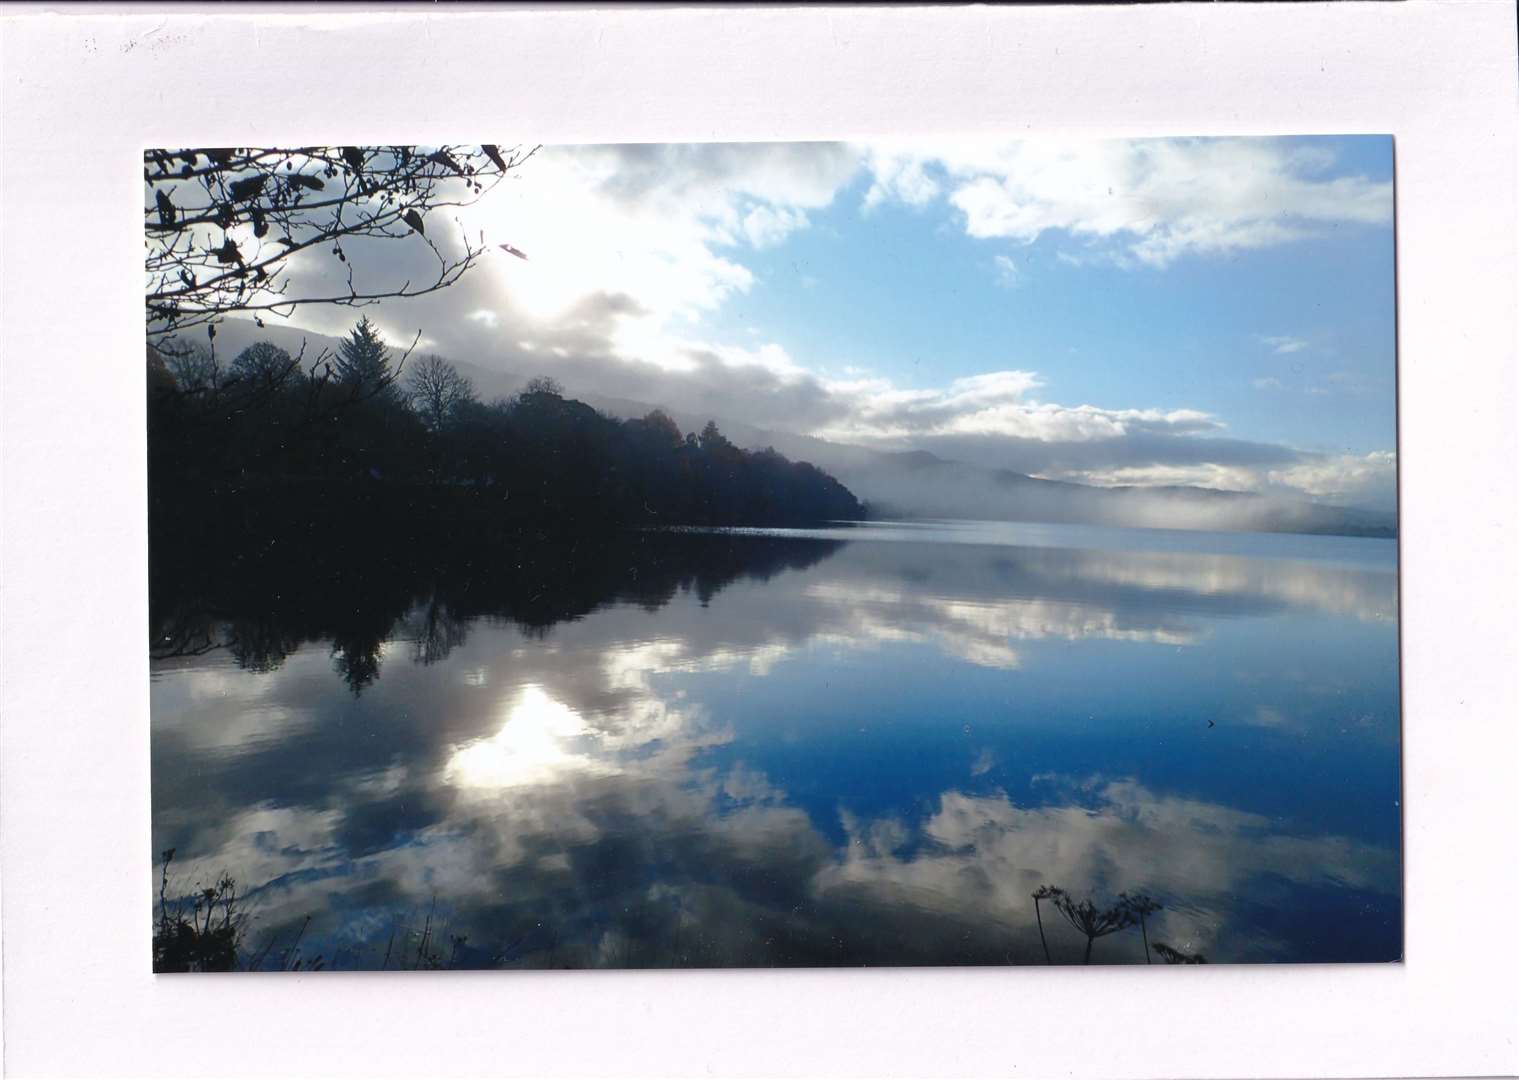 Loch Meiklie at Balnain in Glen Urquhart. Picture: Richard Wood, Cannich